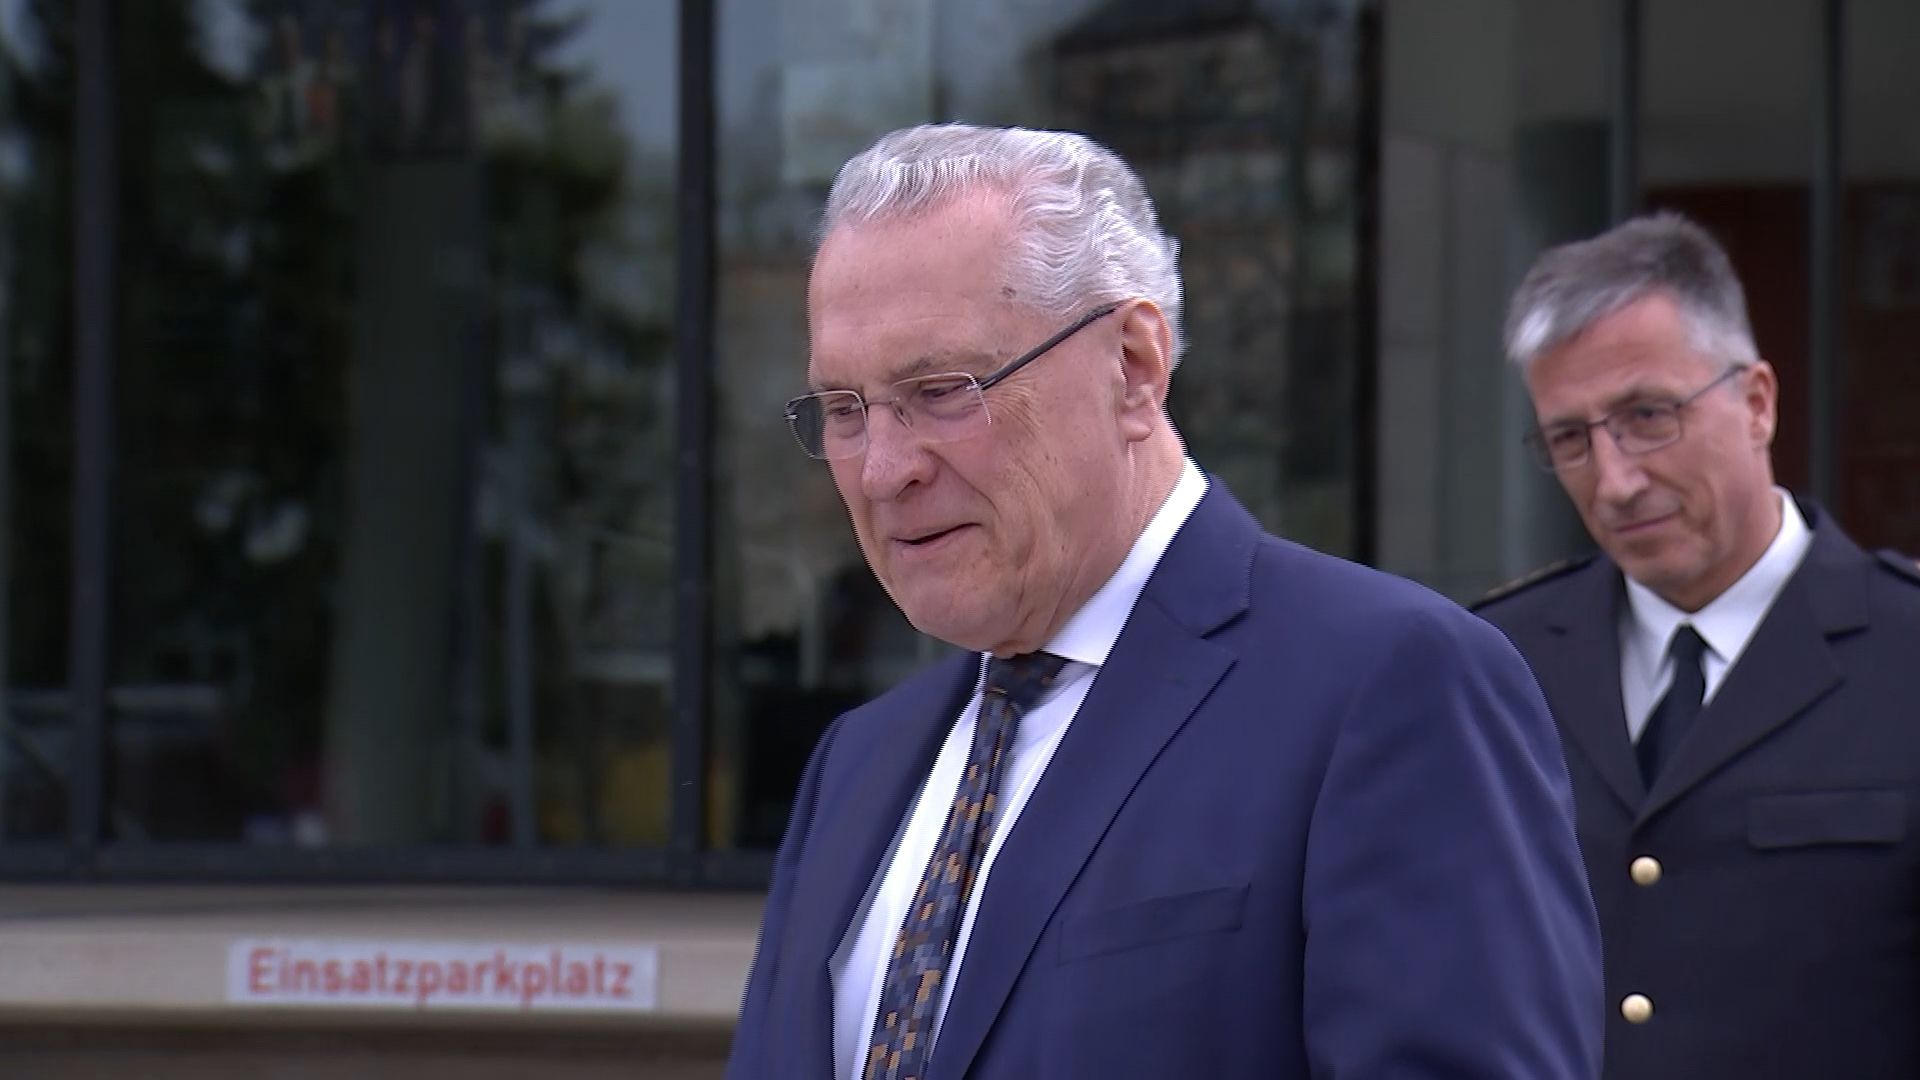 Bayerischer Innenminister in Fürth: 20 Jahre sicherste Großstadt